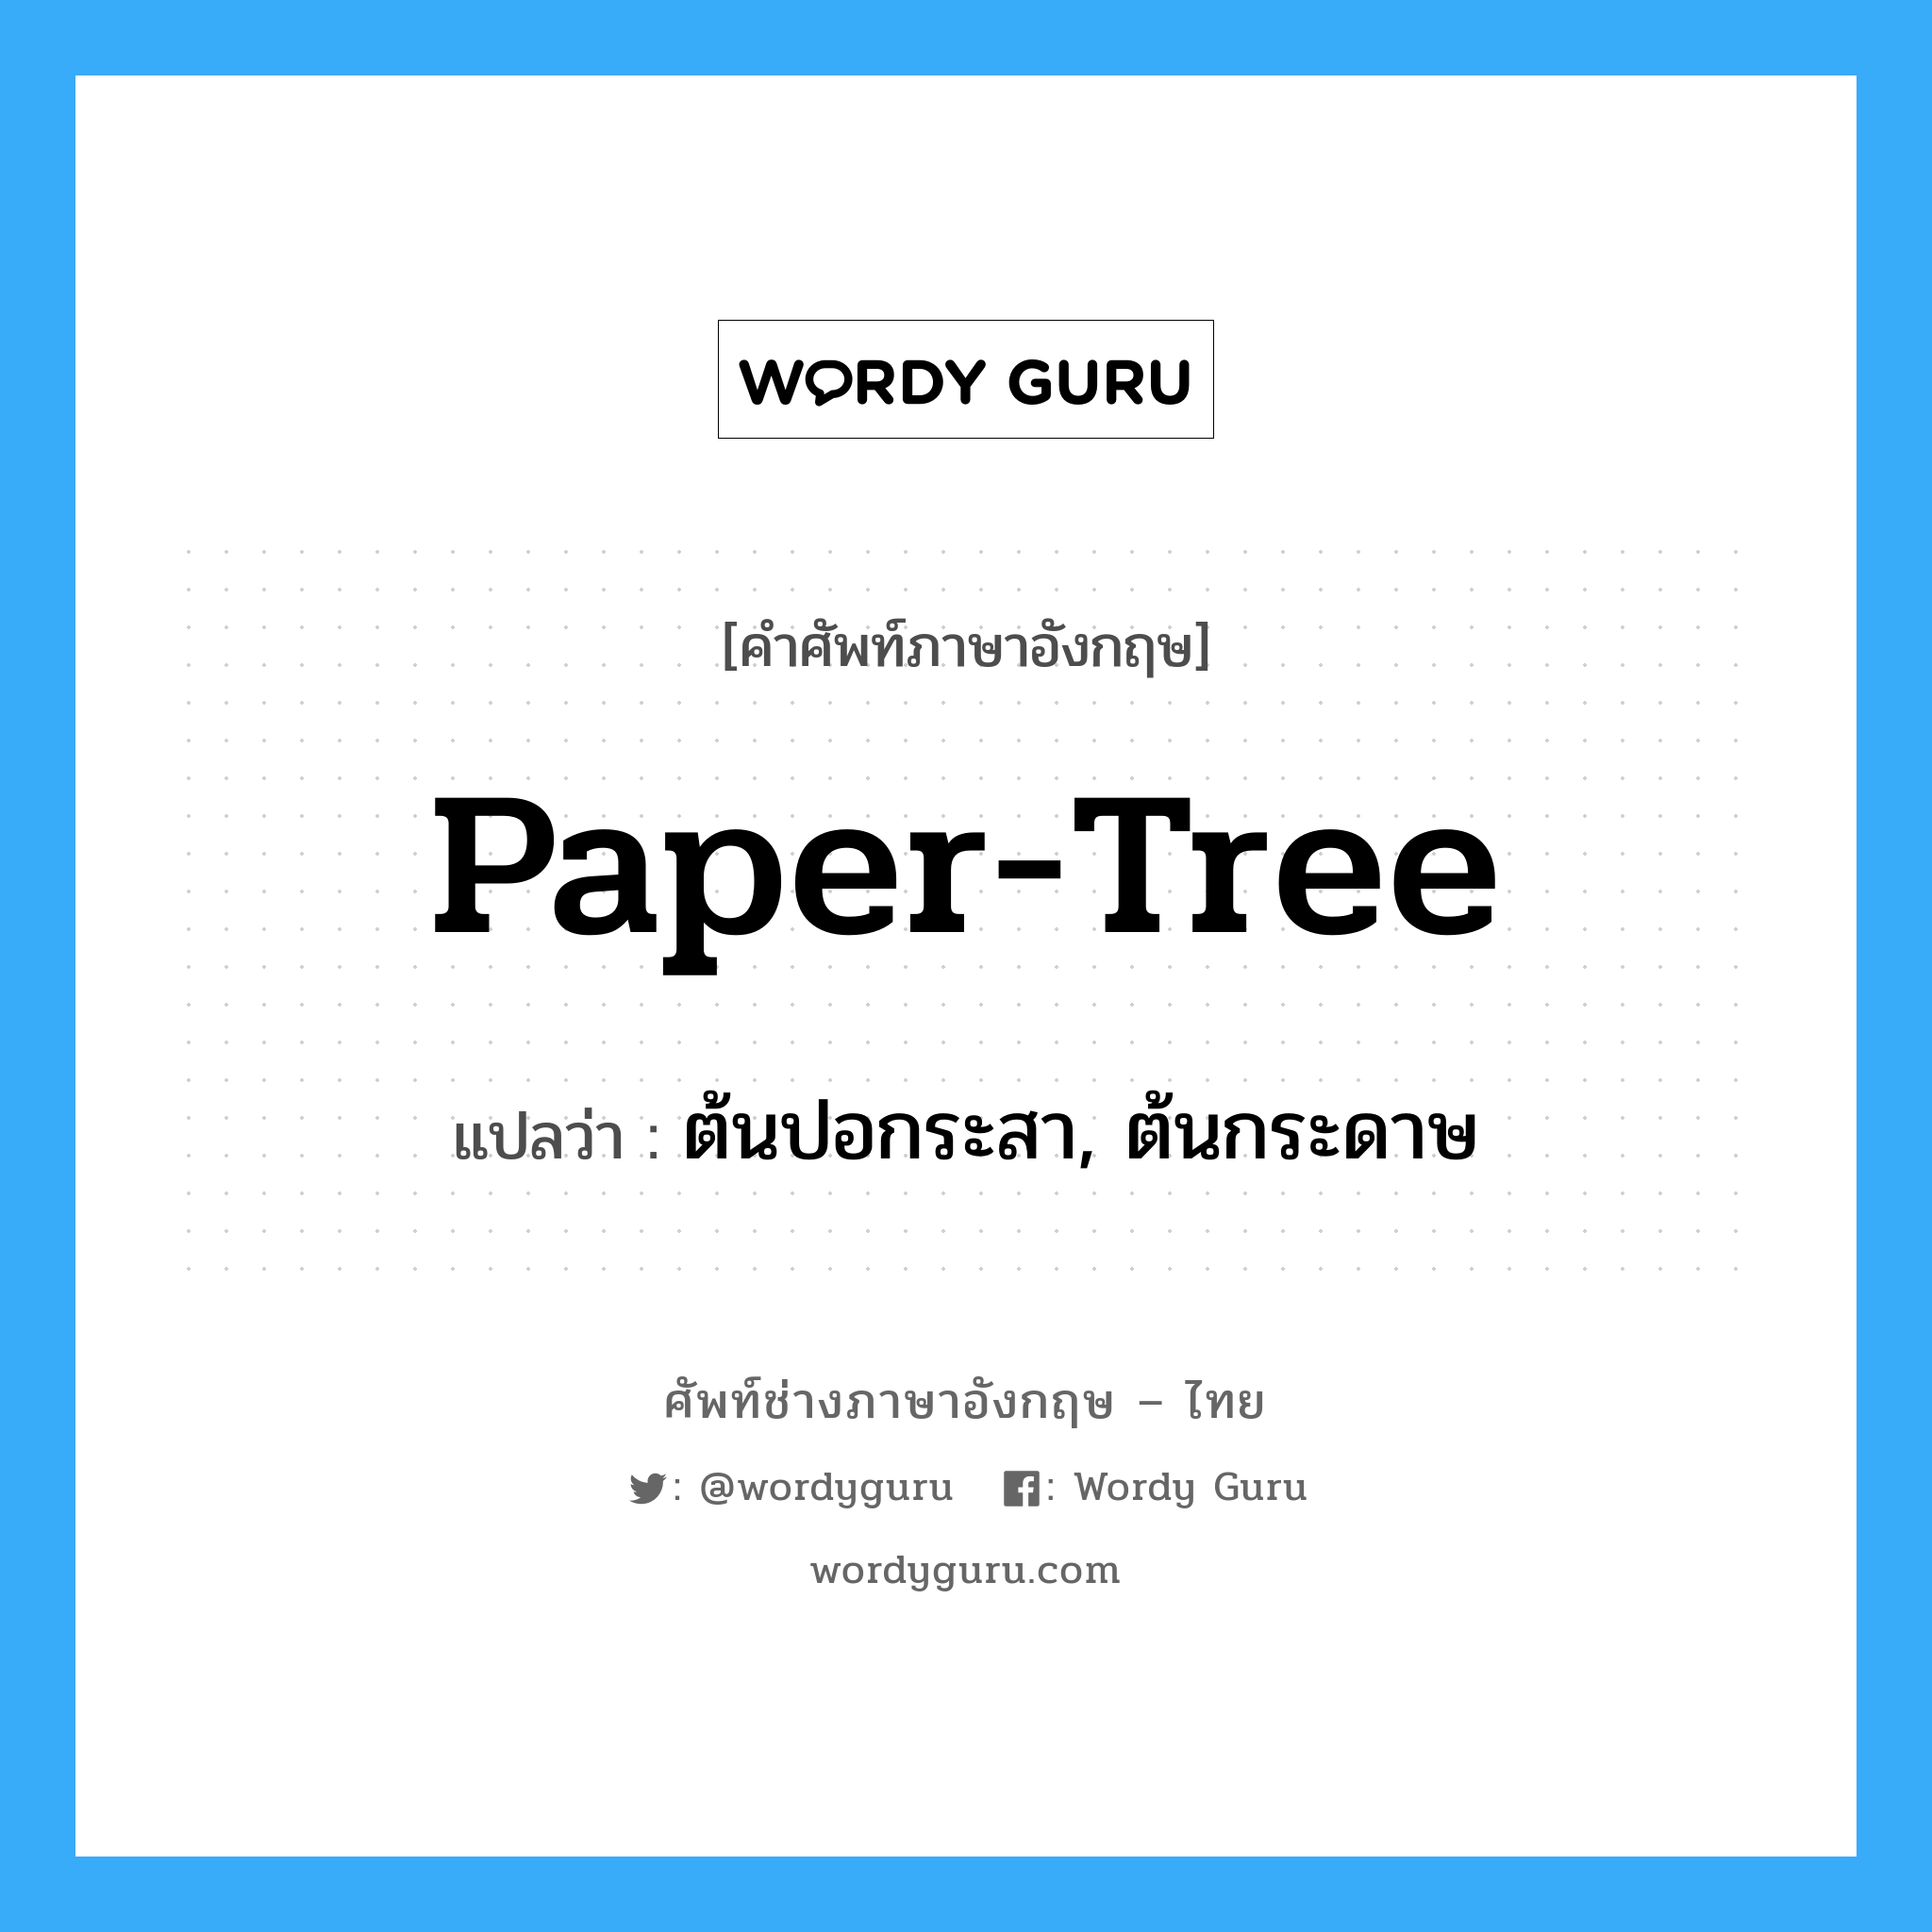 ต้นปอกระสา, ต้นกระดาษ ภาษาอังกฤษ?, คำศัพท์ช่างภาษาอังกฤษ - ไทย ต้นปอกระสา, ต้นกระดาษ คำศัพท์ภาษาอังกฤษ ต้นปอกระสา, ต้นกระดาษ แปลว่า paper-tree